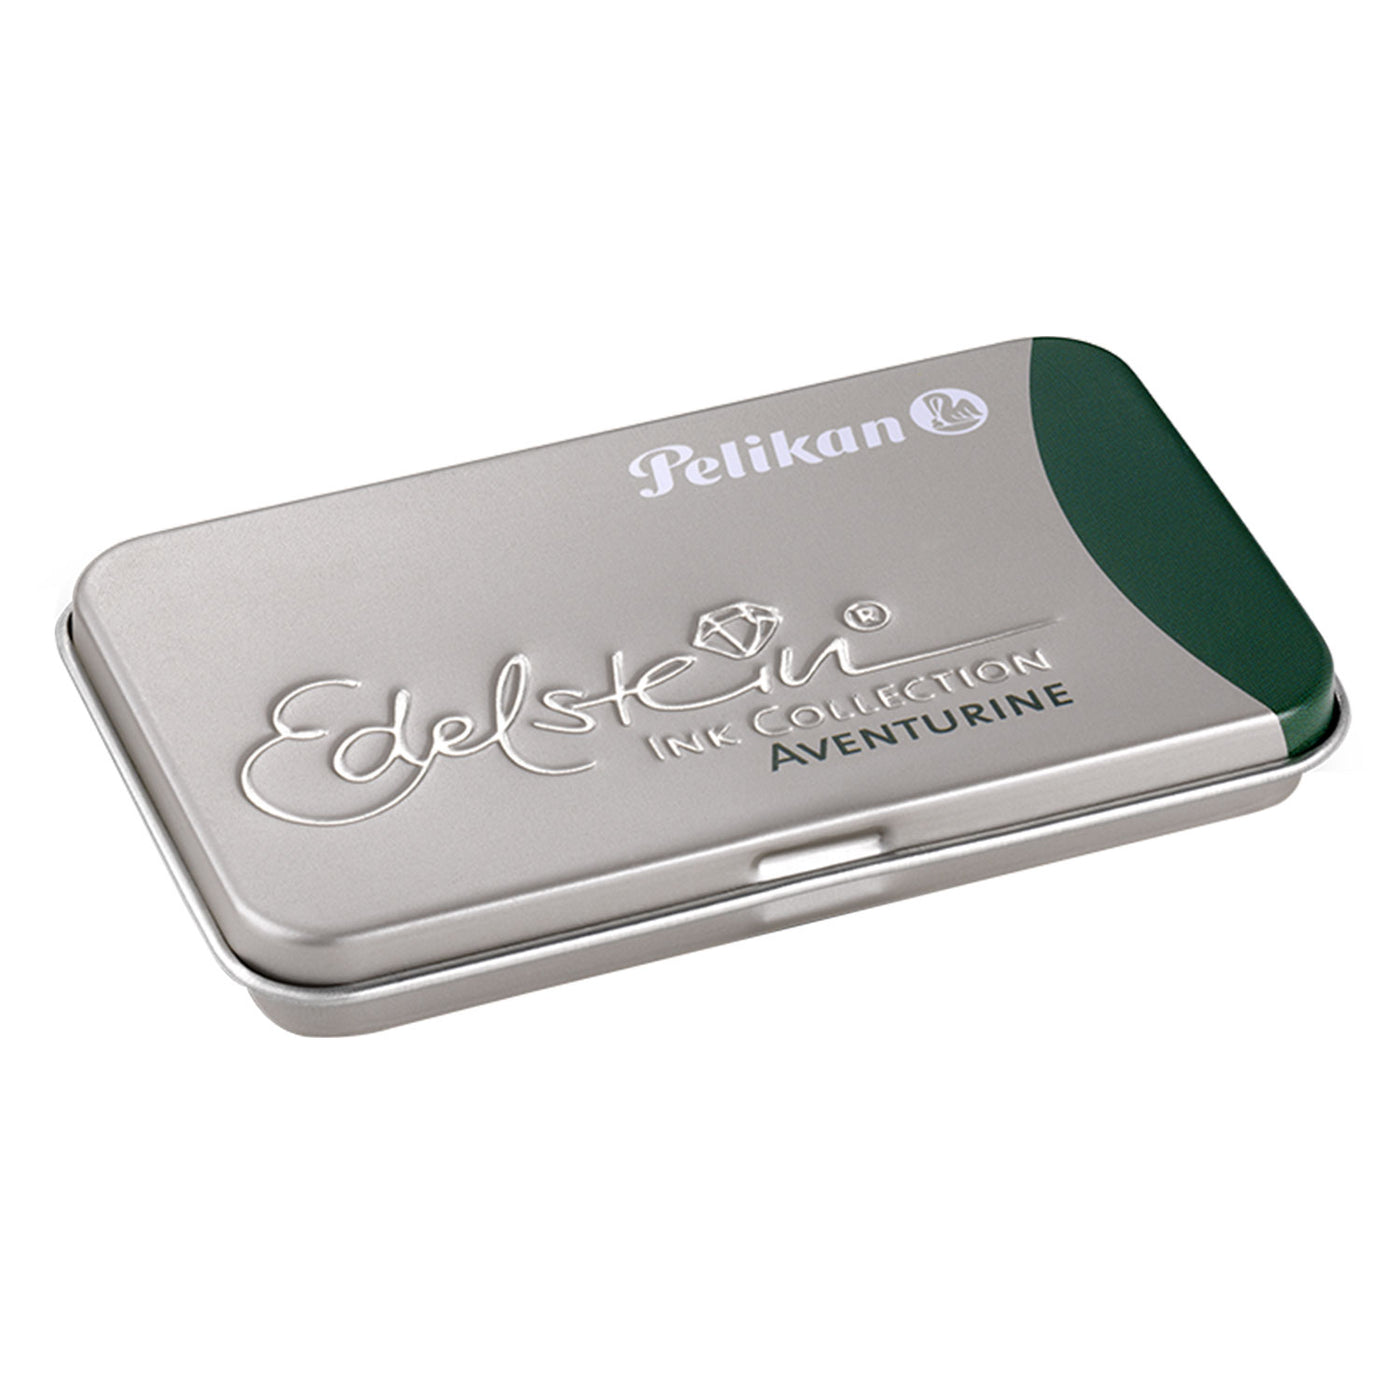 Pelikan Edelstein Ink Cartridge Pack of 6 - Aventurine